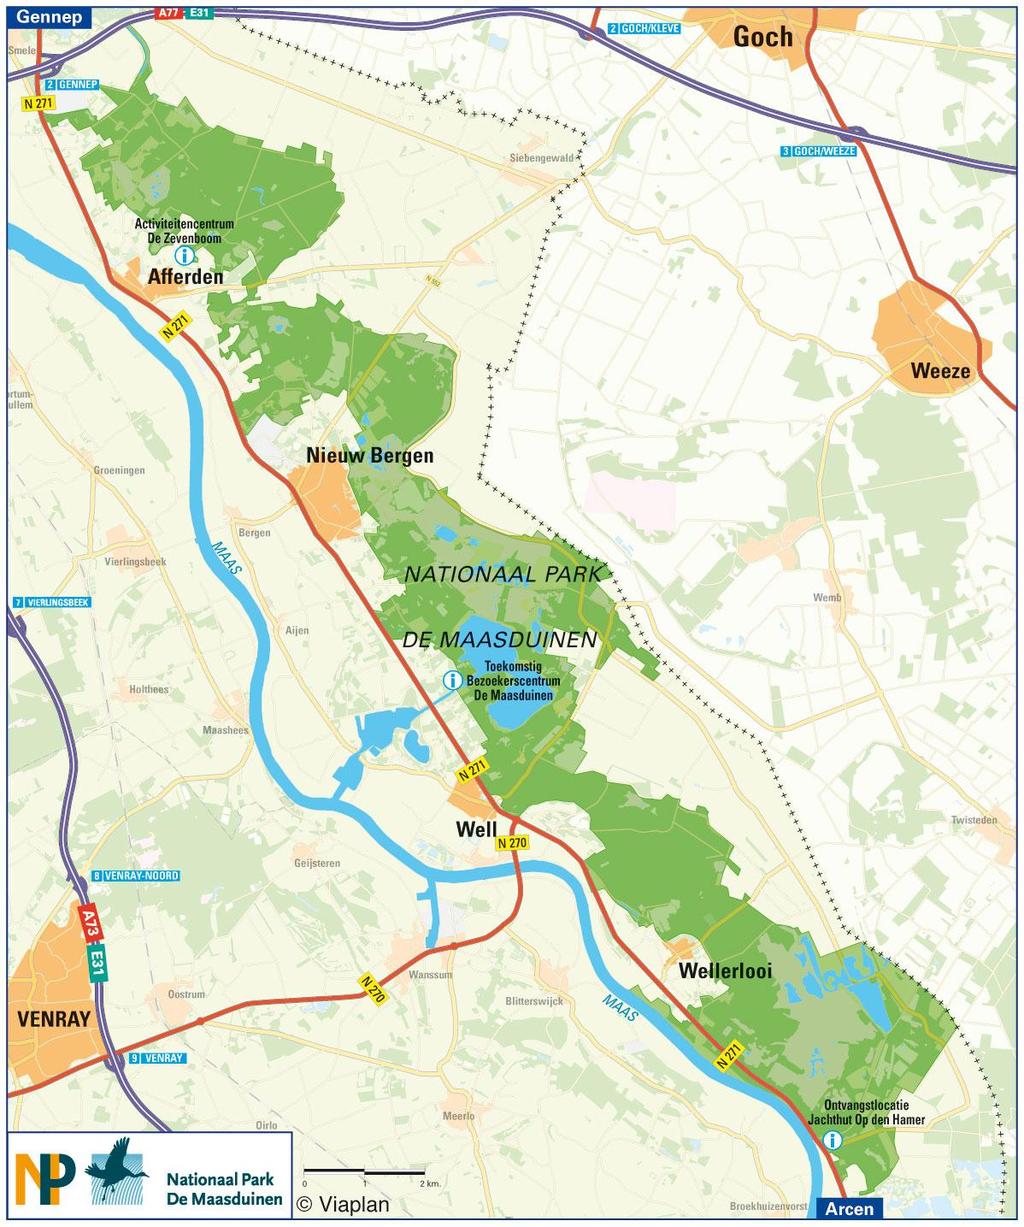 24 juni 2011: Bezoek aan 1. Introductie: De Maasduinen (opgericht op 16 oktober 2004) strekken zich uit langs de oostelijke oever van de Maas in de Noord-Limburgse gemeenten Bergen en Gennep.